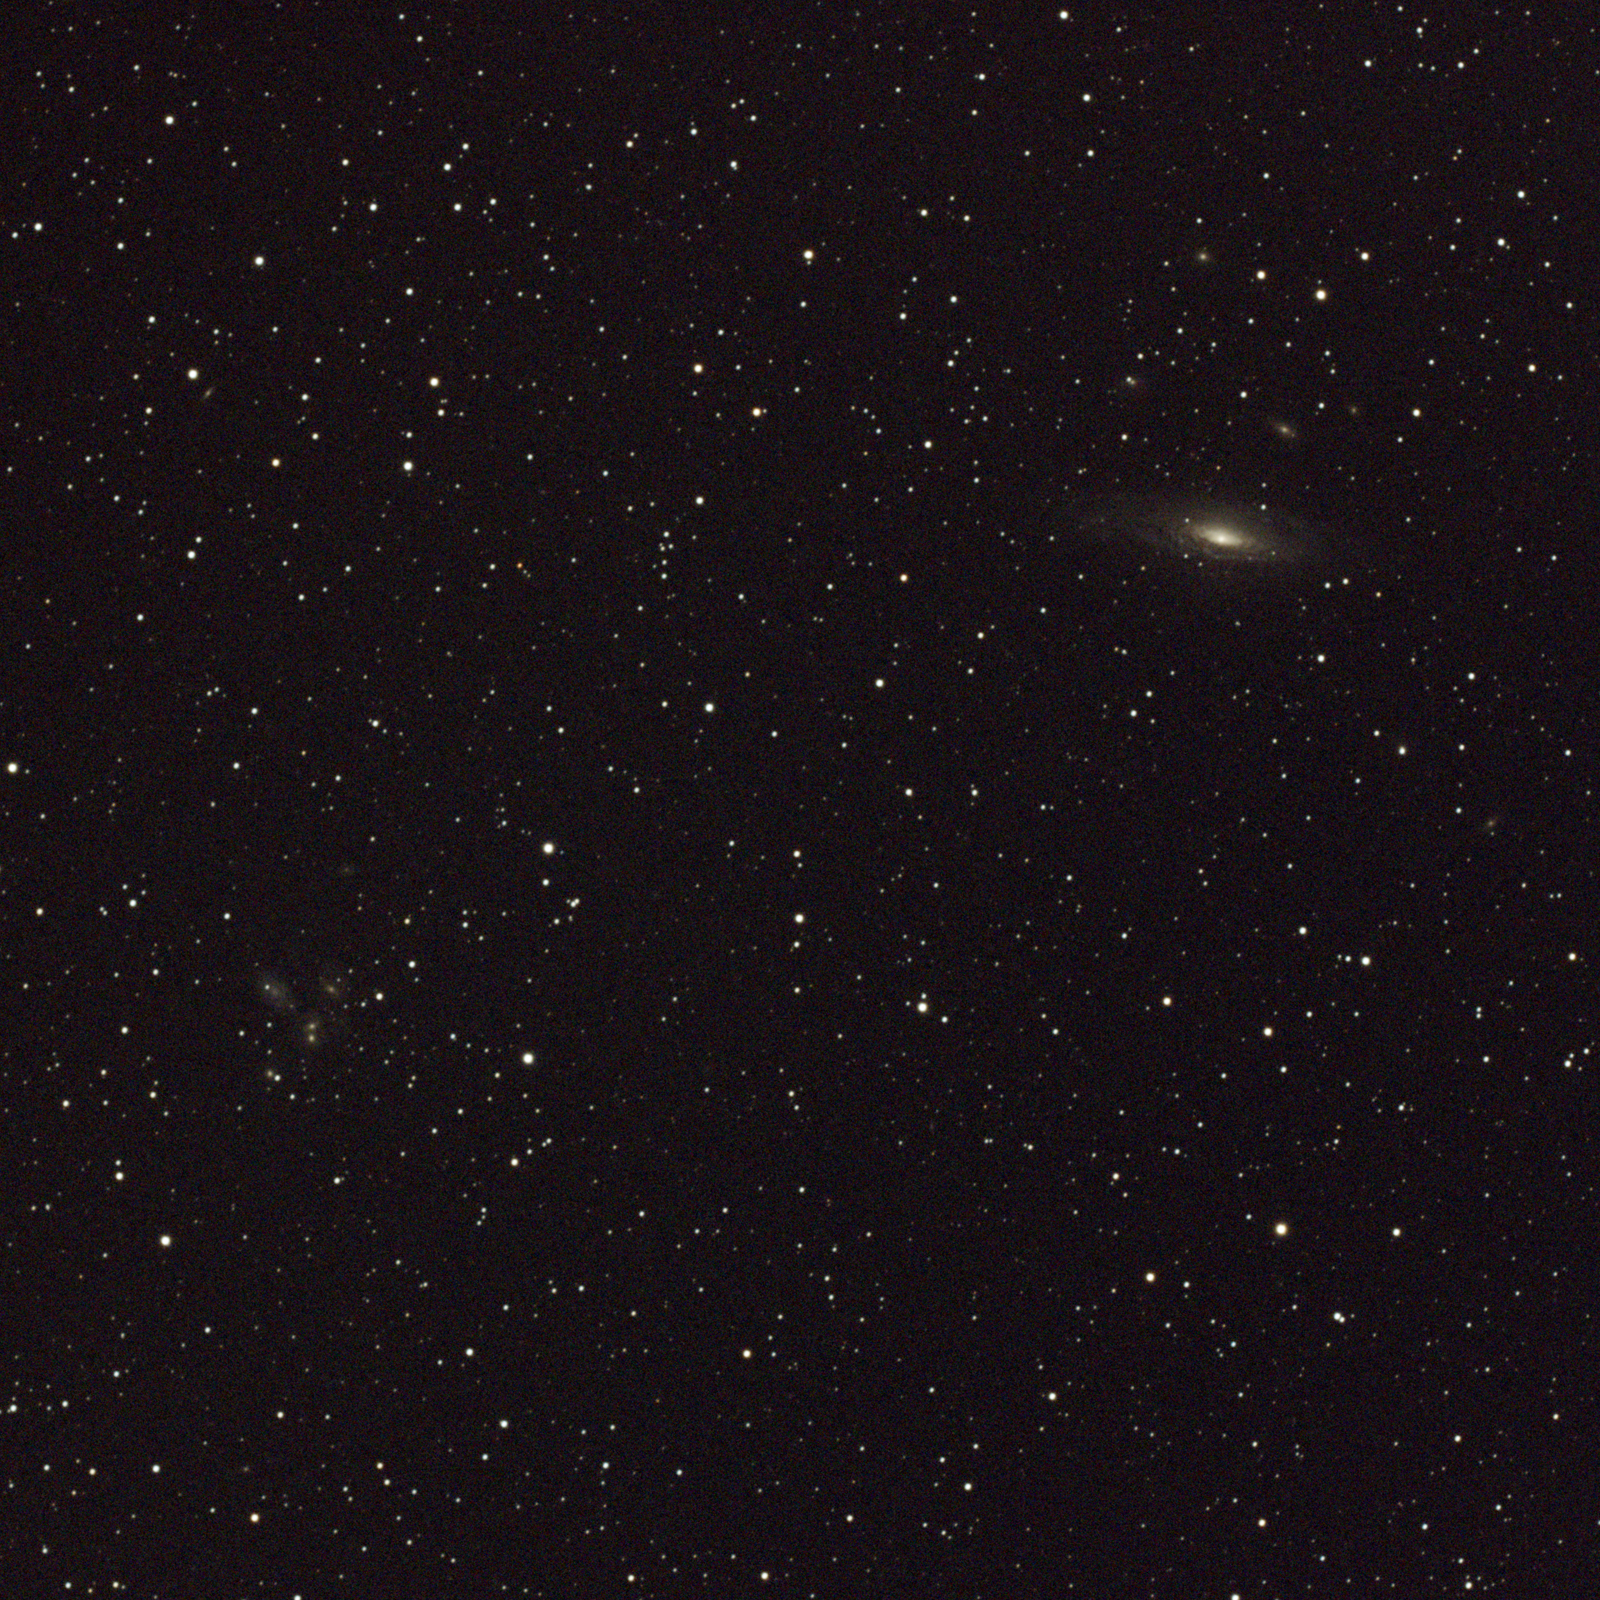 NGC7331 DLGandSQ 160f6 2 2600 g350 62F 930S NoEdit 09012022m